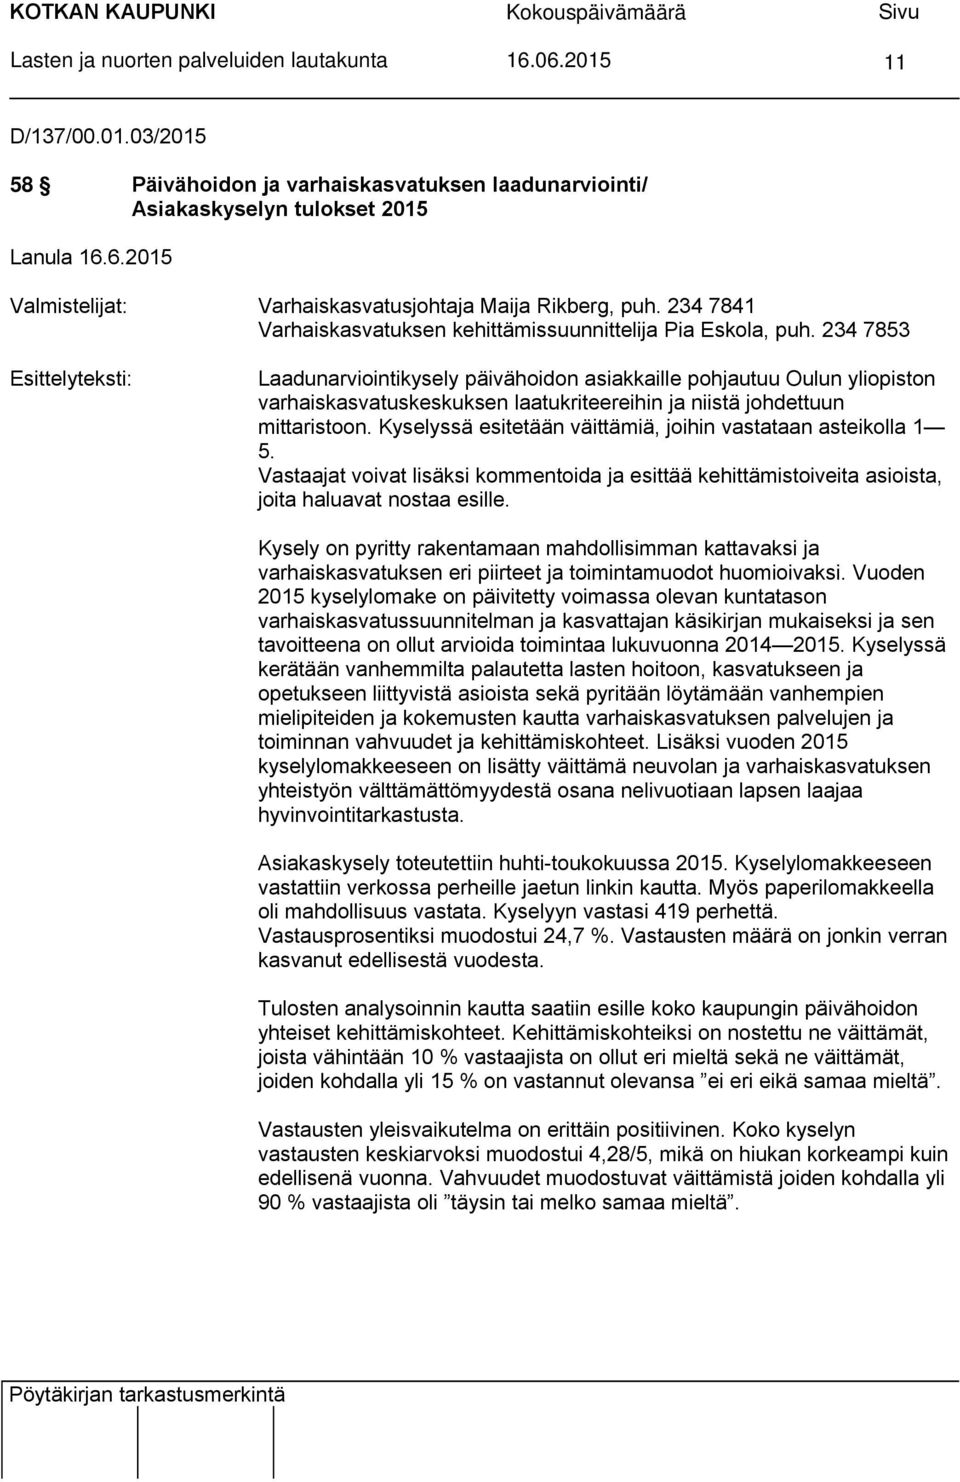 234 7853 Esittelyteksti: Laadunarviointikysely päivähoidon asiakkaille pohjautuu Oulun yliopiston varhaiskasvatuskeskuksen laatukriteereihin ja niistä johdettuun mittaristoon.